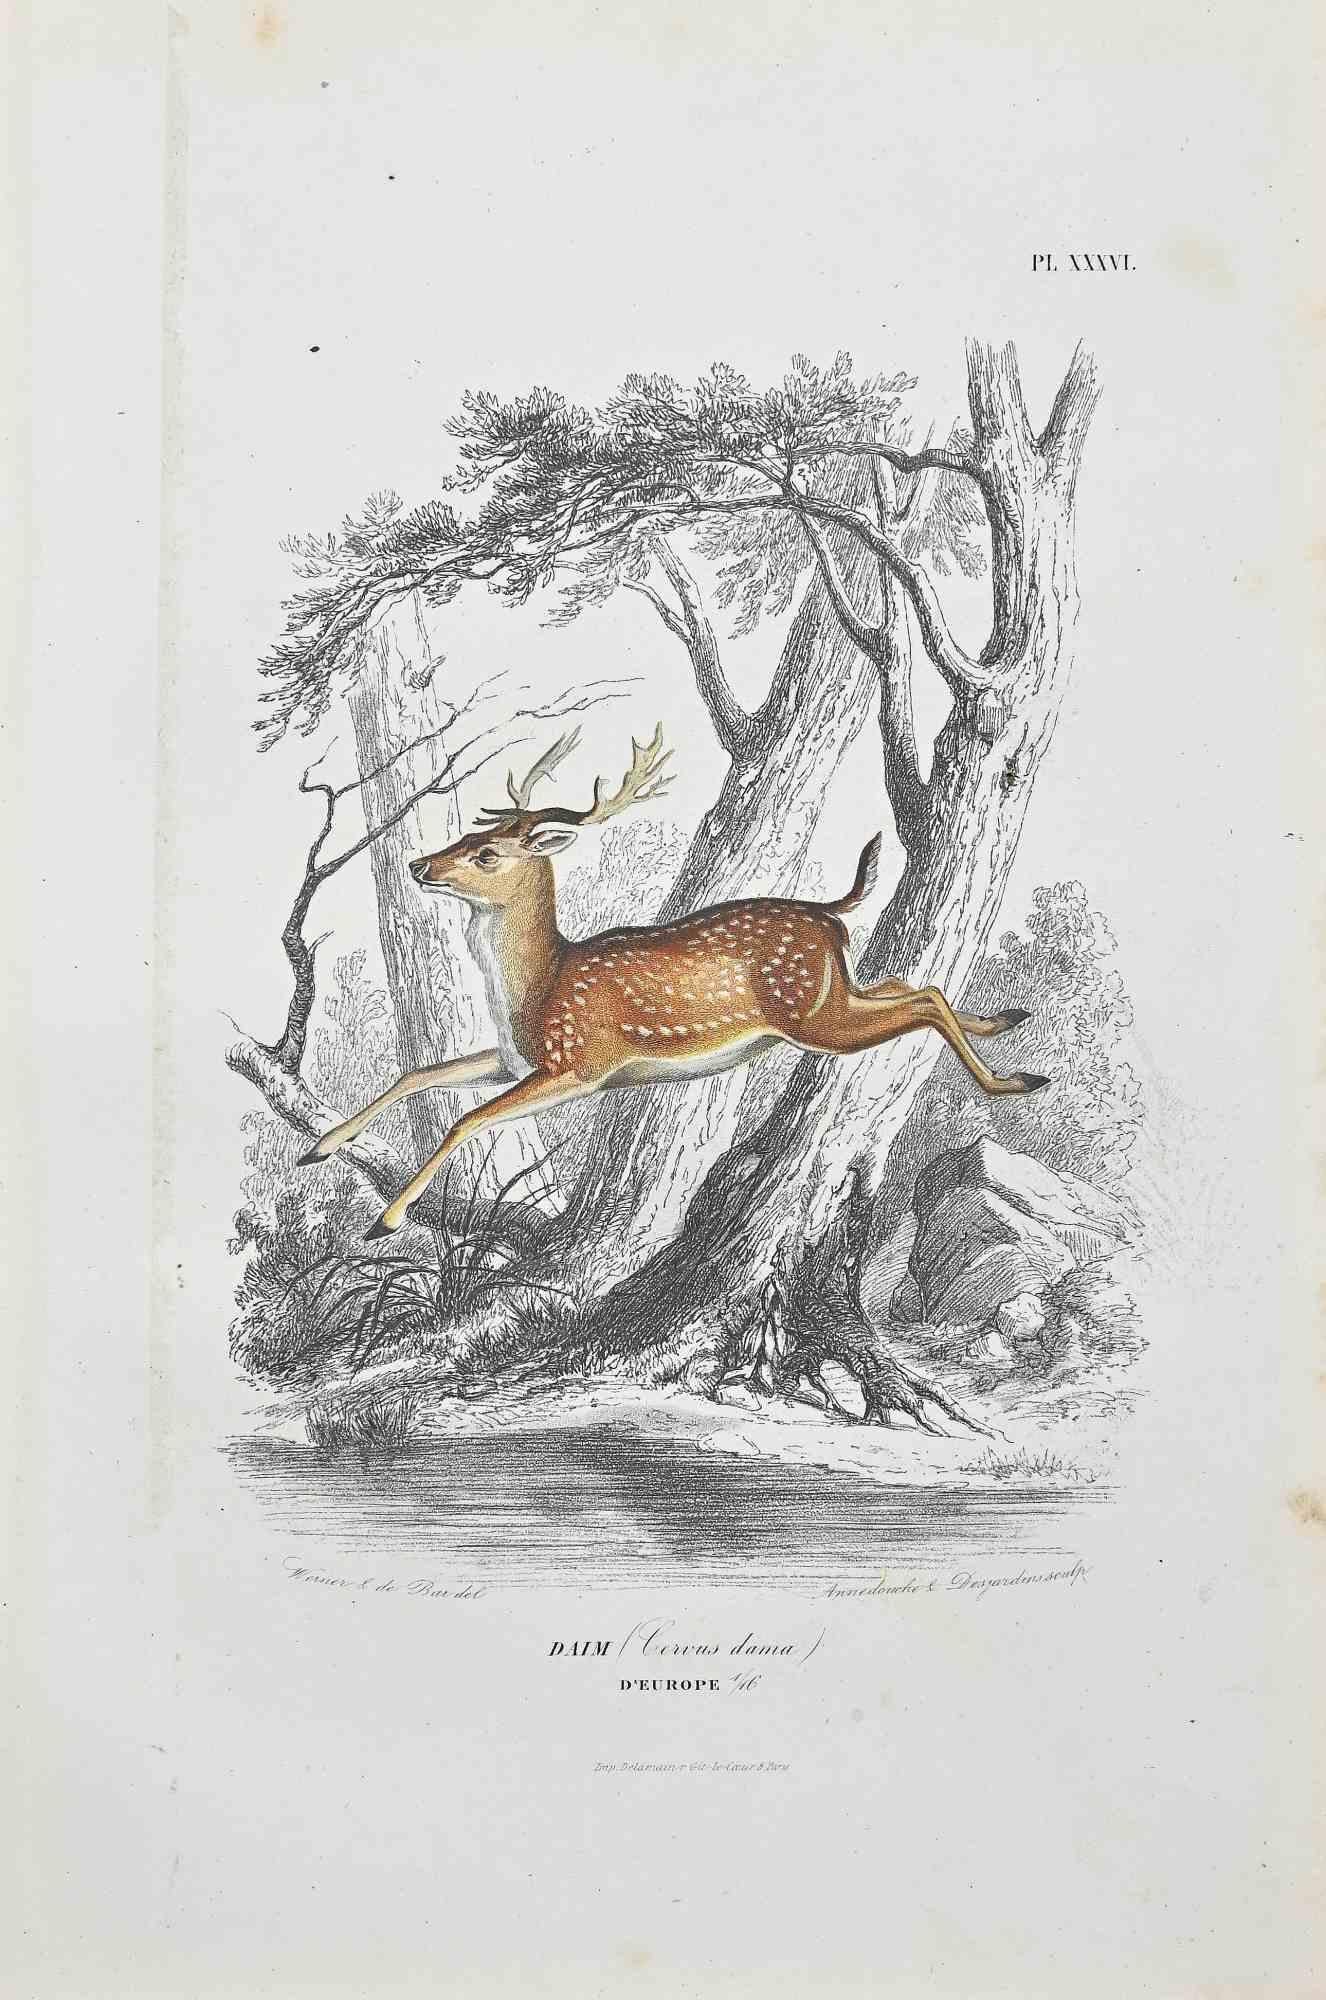 Der Hirsch ist eine Originallithographie auf elfenbeinfarbenem Papier, die von Paul Gervais (1816-1879) geschaffen wurde. Das Kunstwerk stammt aus der Serie "Les Trois Règnes de la Nature" und wurde 1854 veröffentlicht.

Auf der unteren Seite